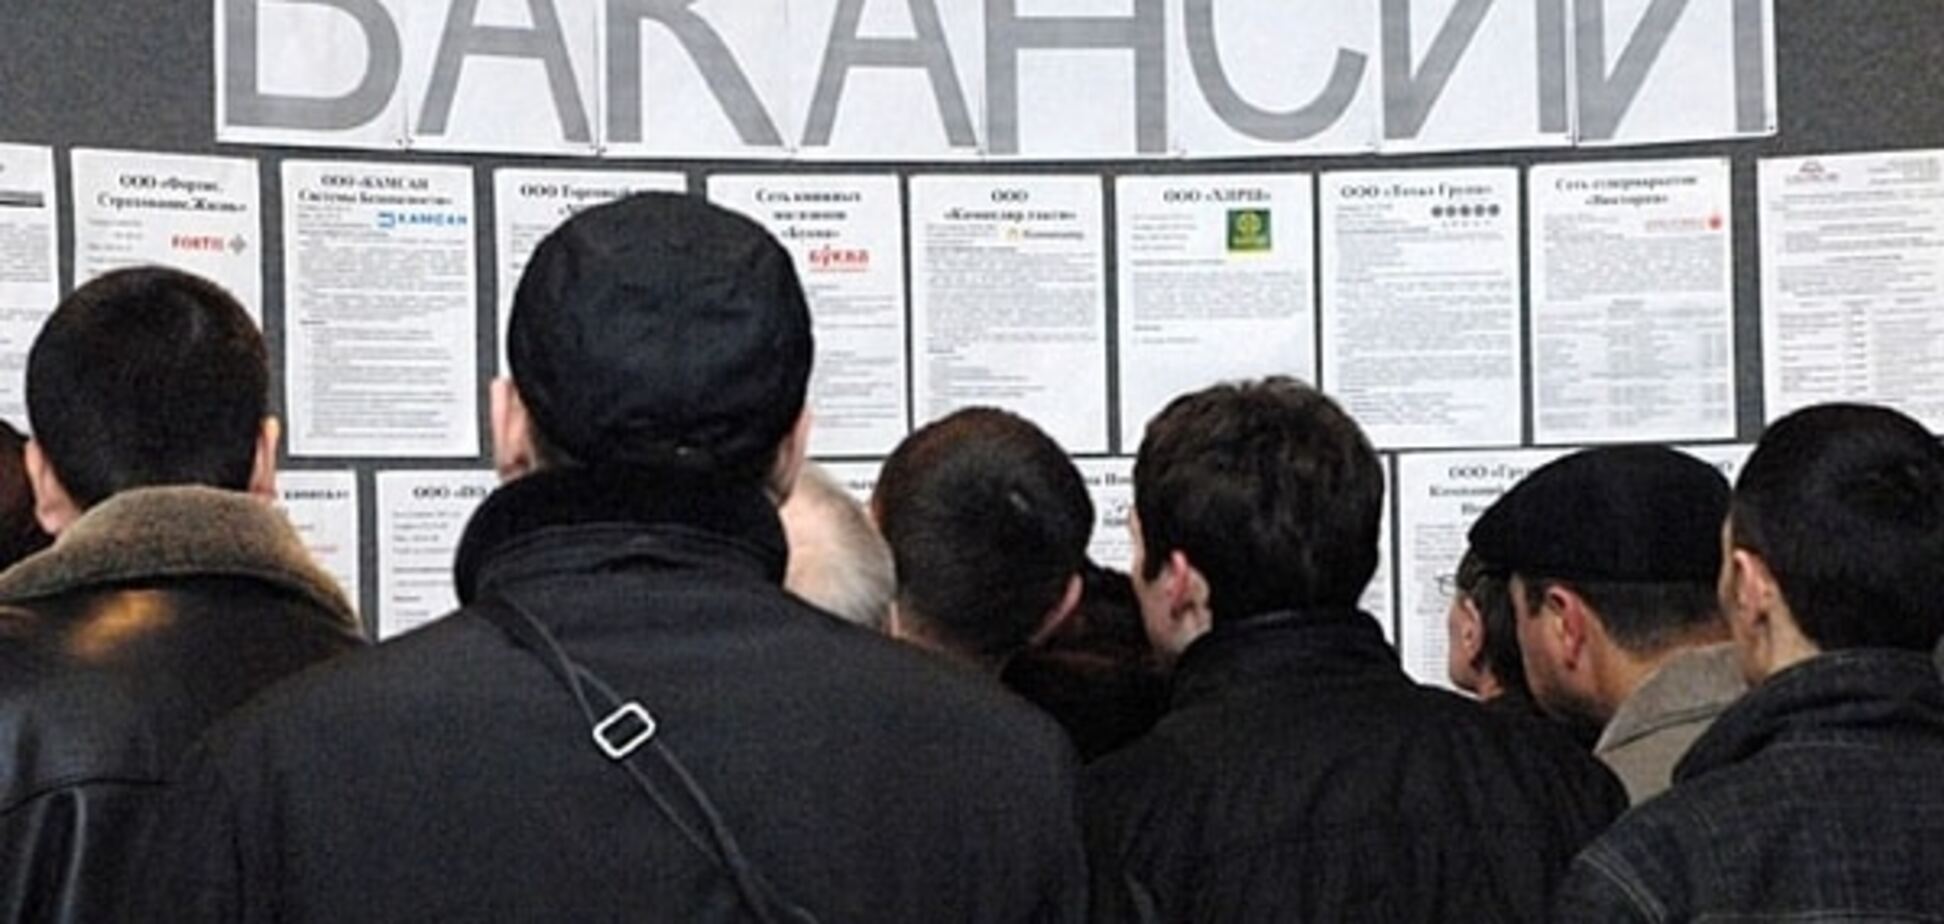 Война и кризис: как выросла безработица в Украине. Инфографика